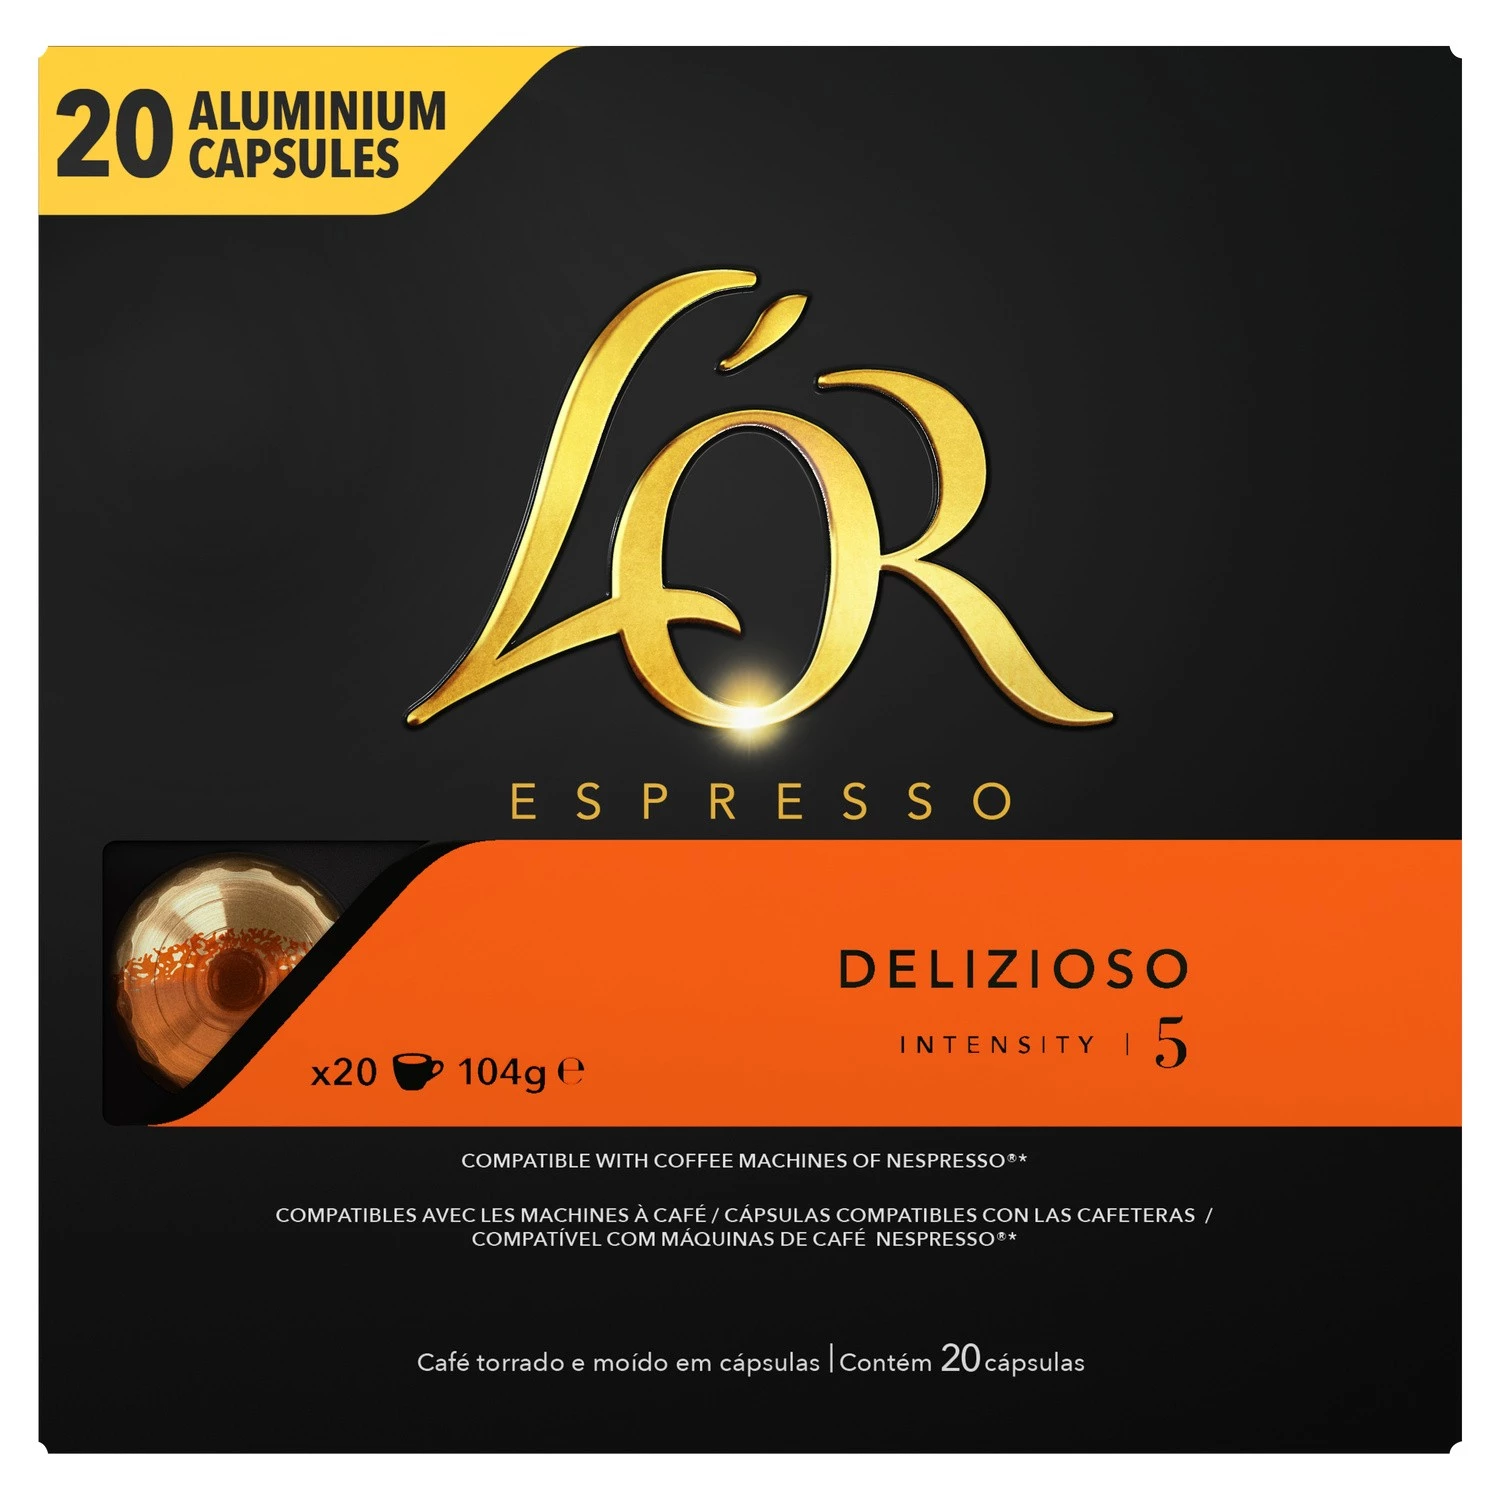 Café Délizioso X20 Capsule Alluminio 104g - L'OR